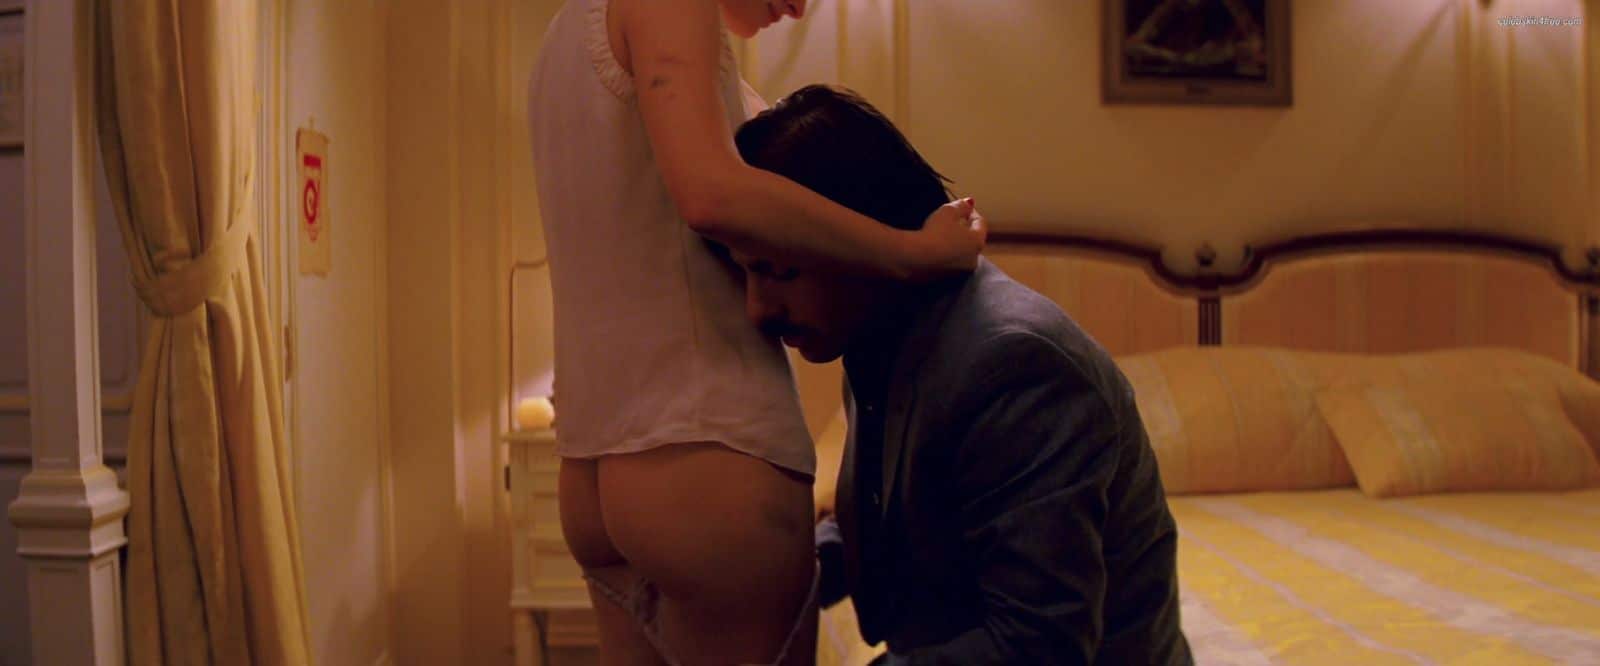 hotel chevalier short film pic of natalie portman's naked ass